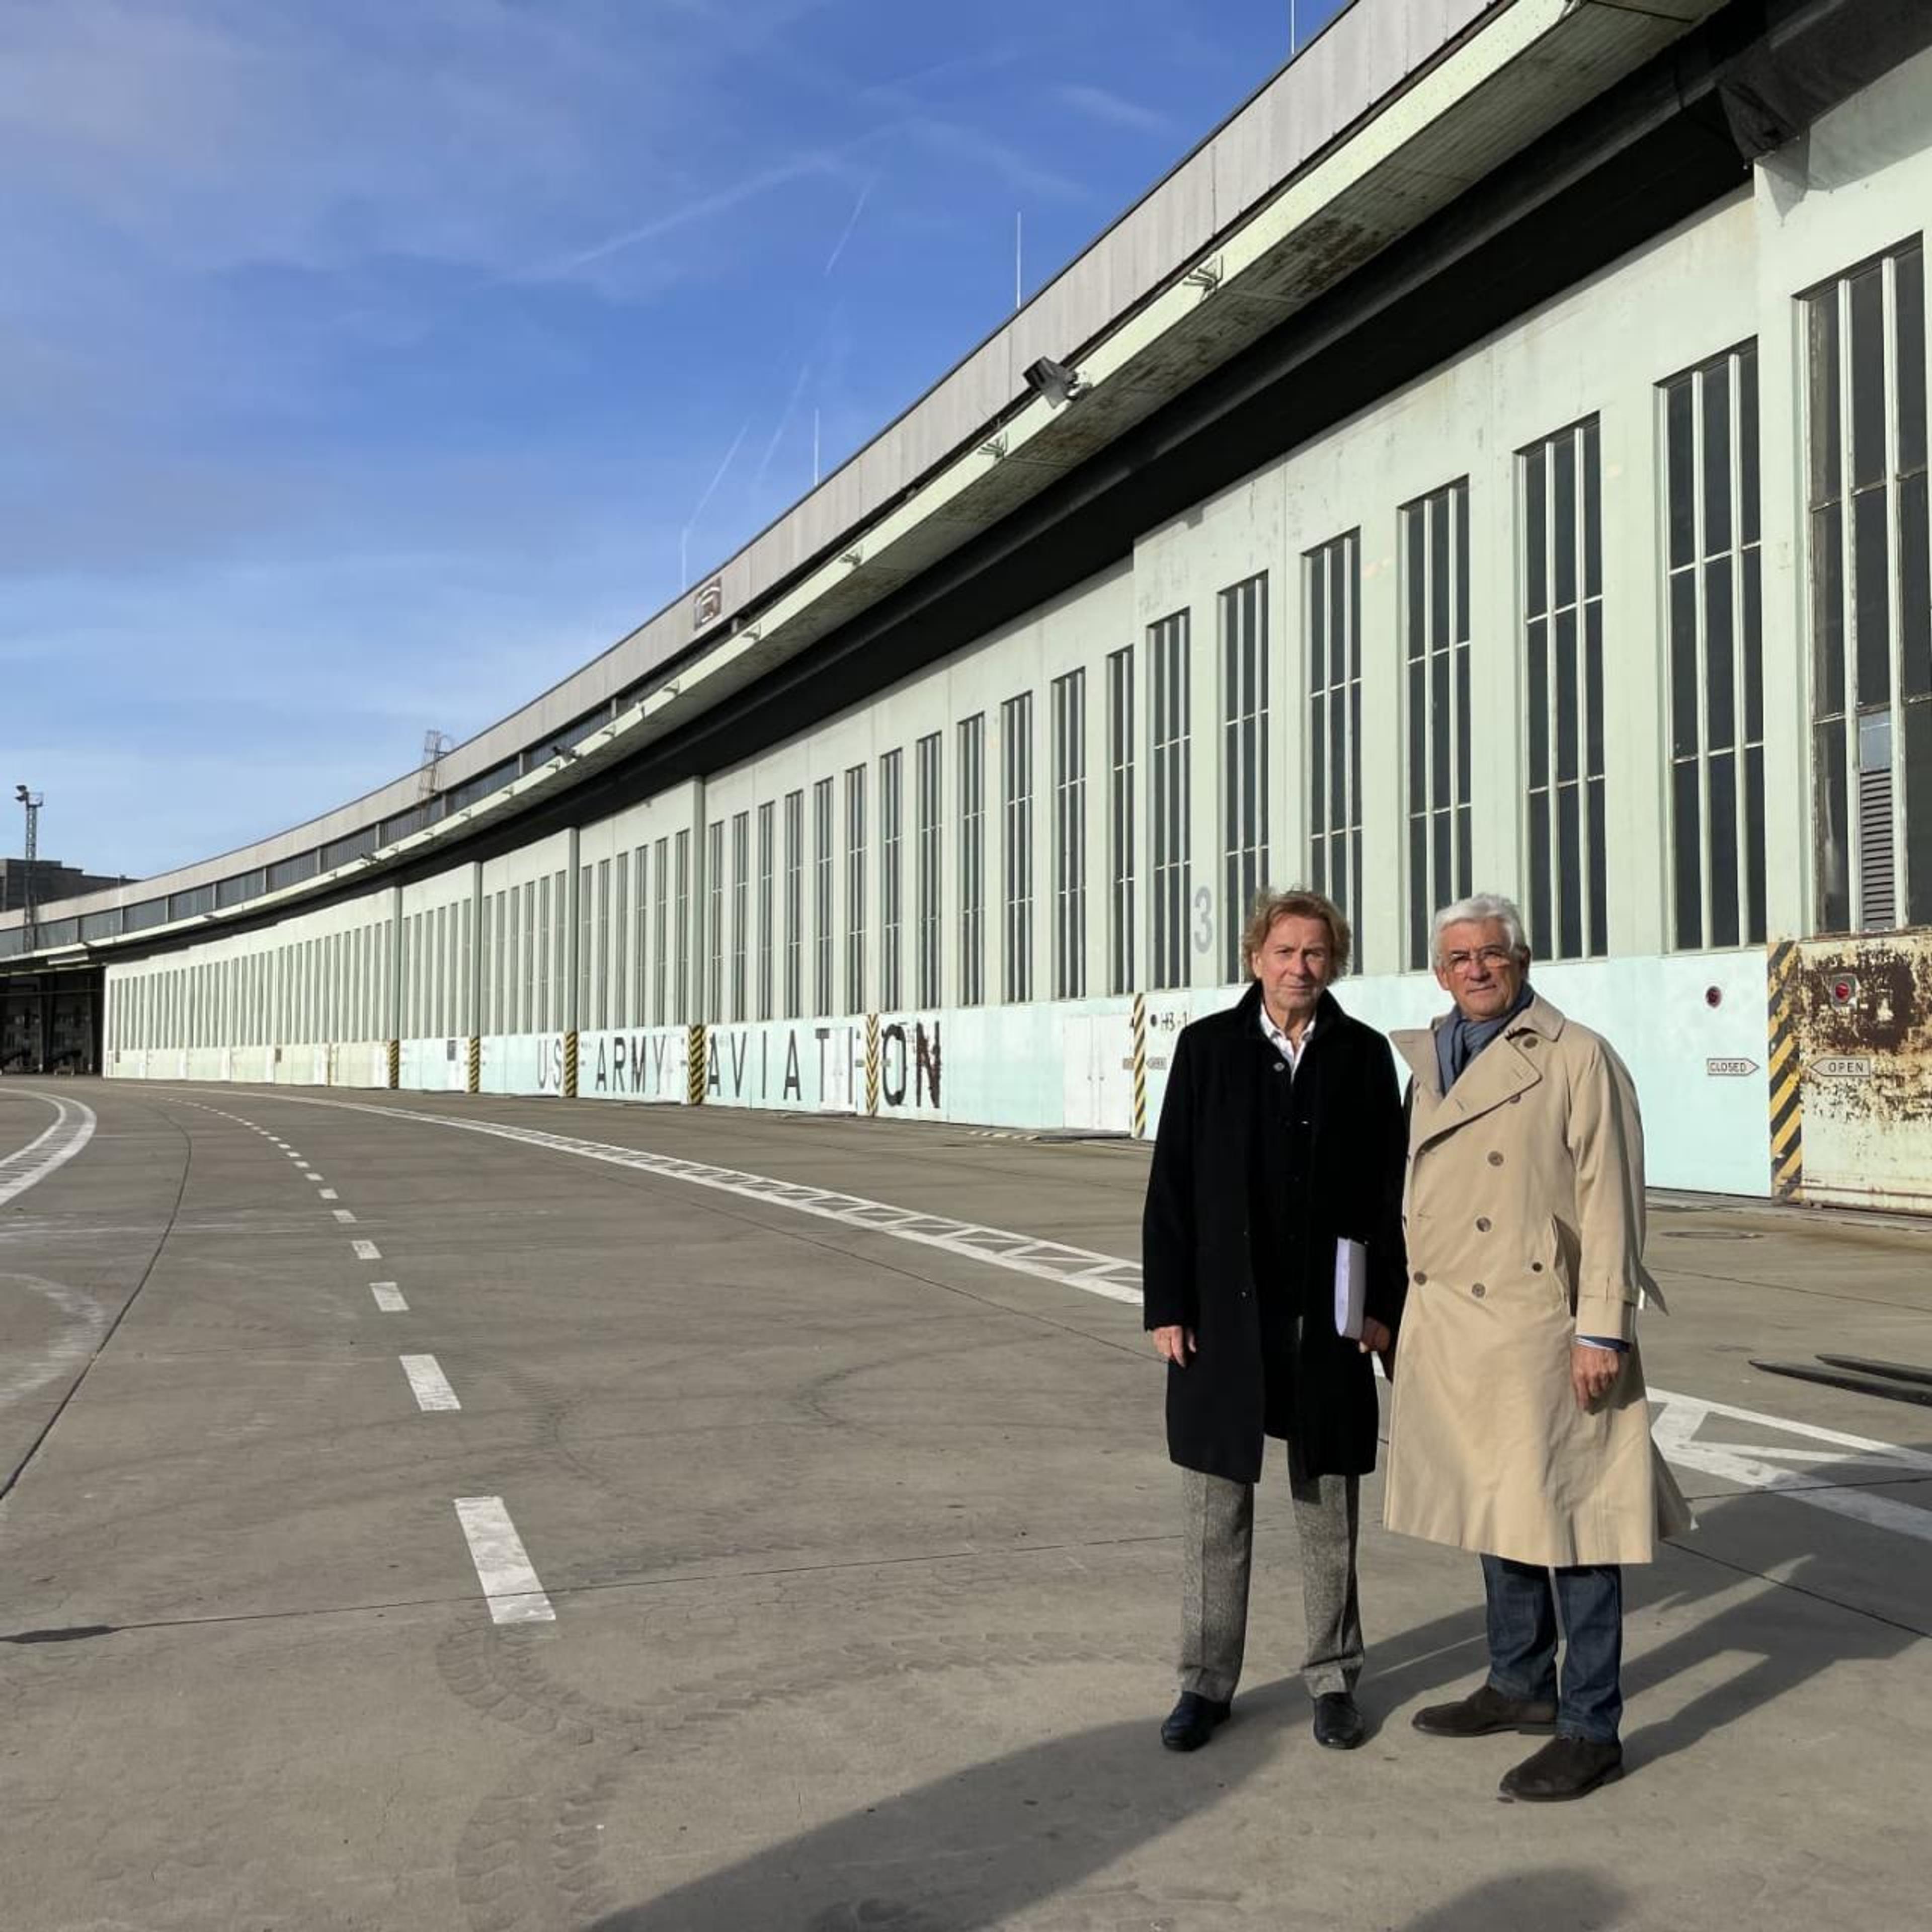 Walter Smerling and Bernar Venet at Tempelhof, 2021